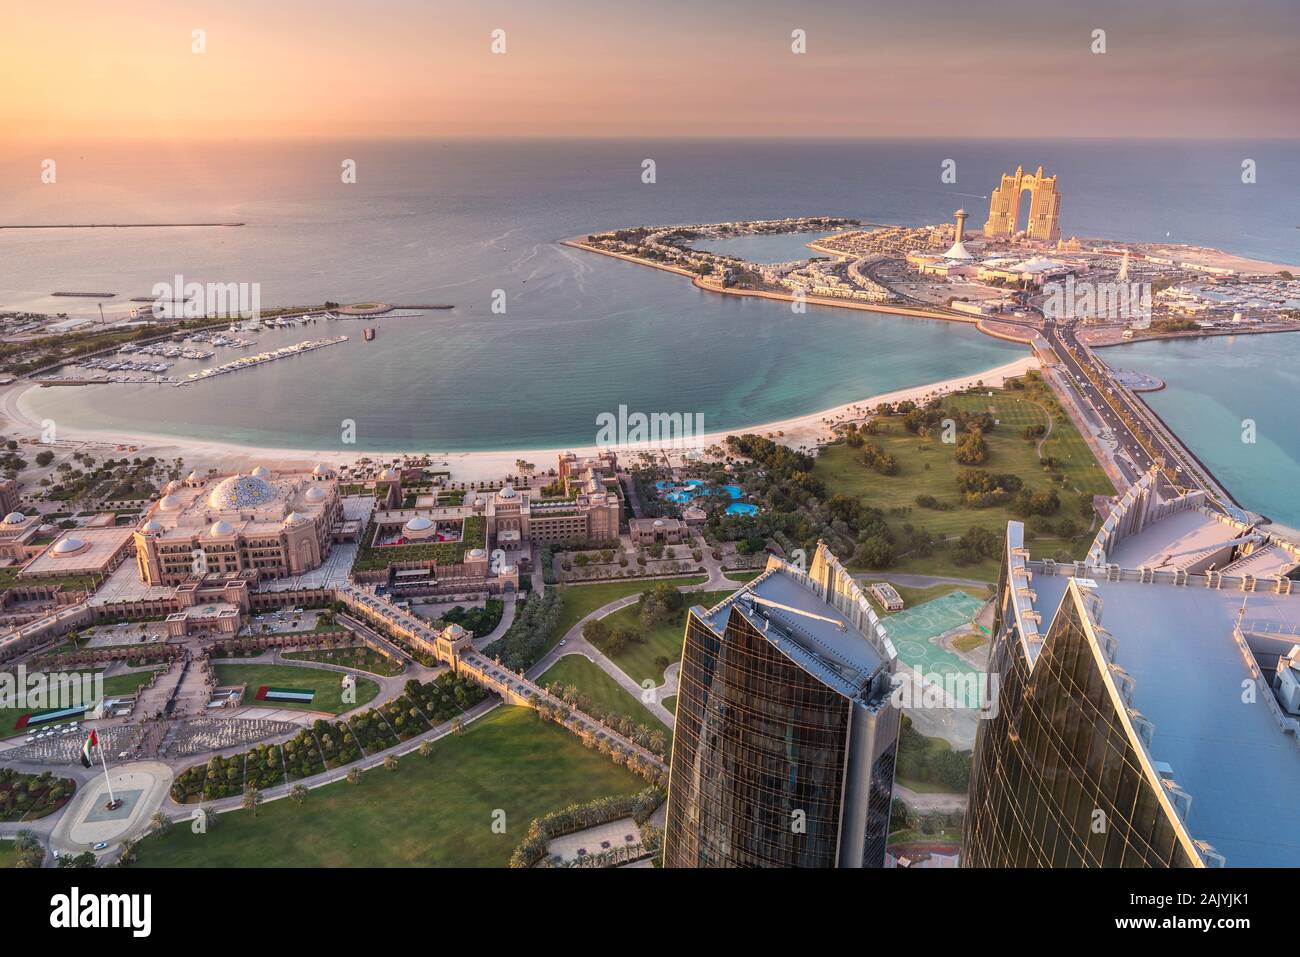 Abu Dhabi, Vereinigte Arabische Emirate: Schöne Luftaufnahme von der Aussichtsplattform bei 300, Etihad Towers Emirates Palace und Al Marina Village Stockfoto